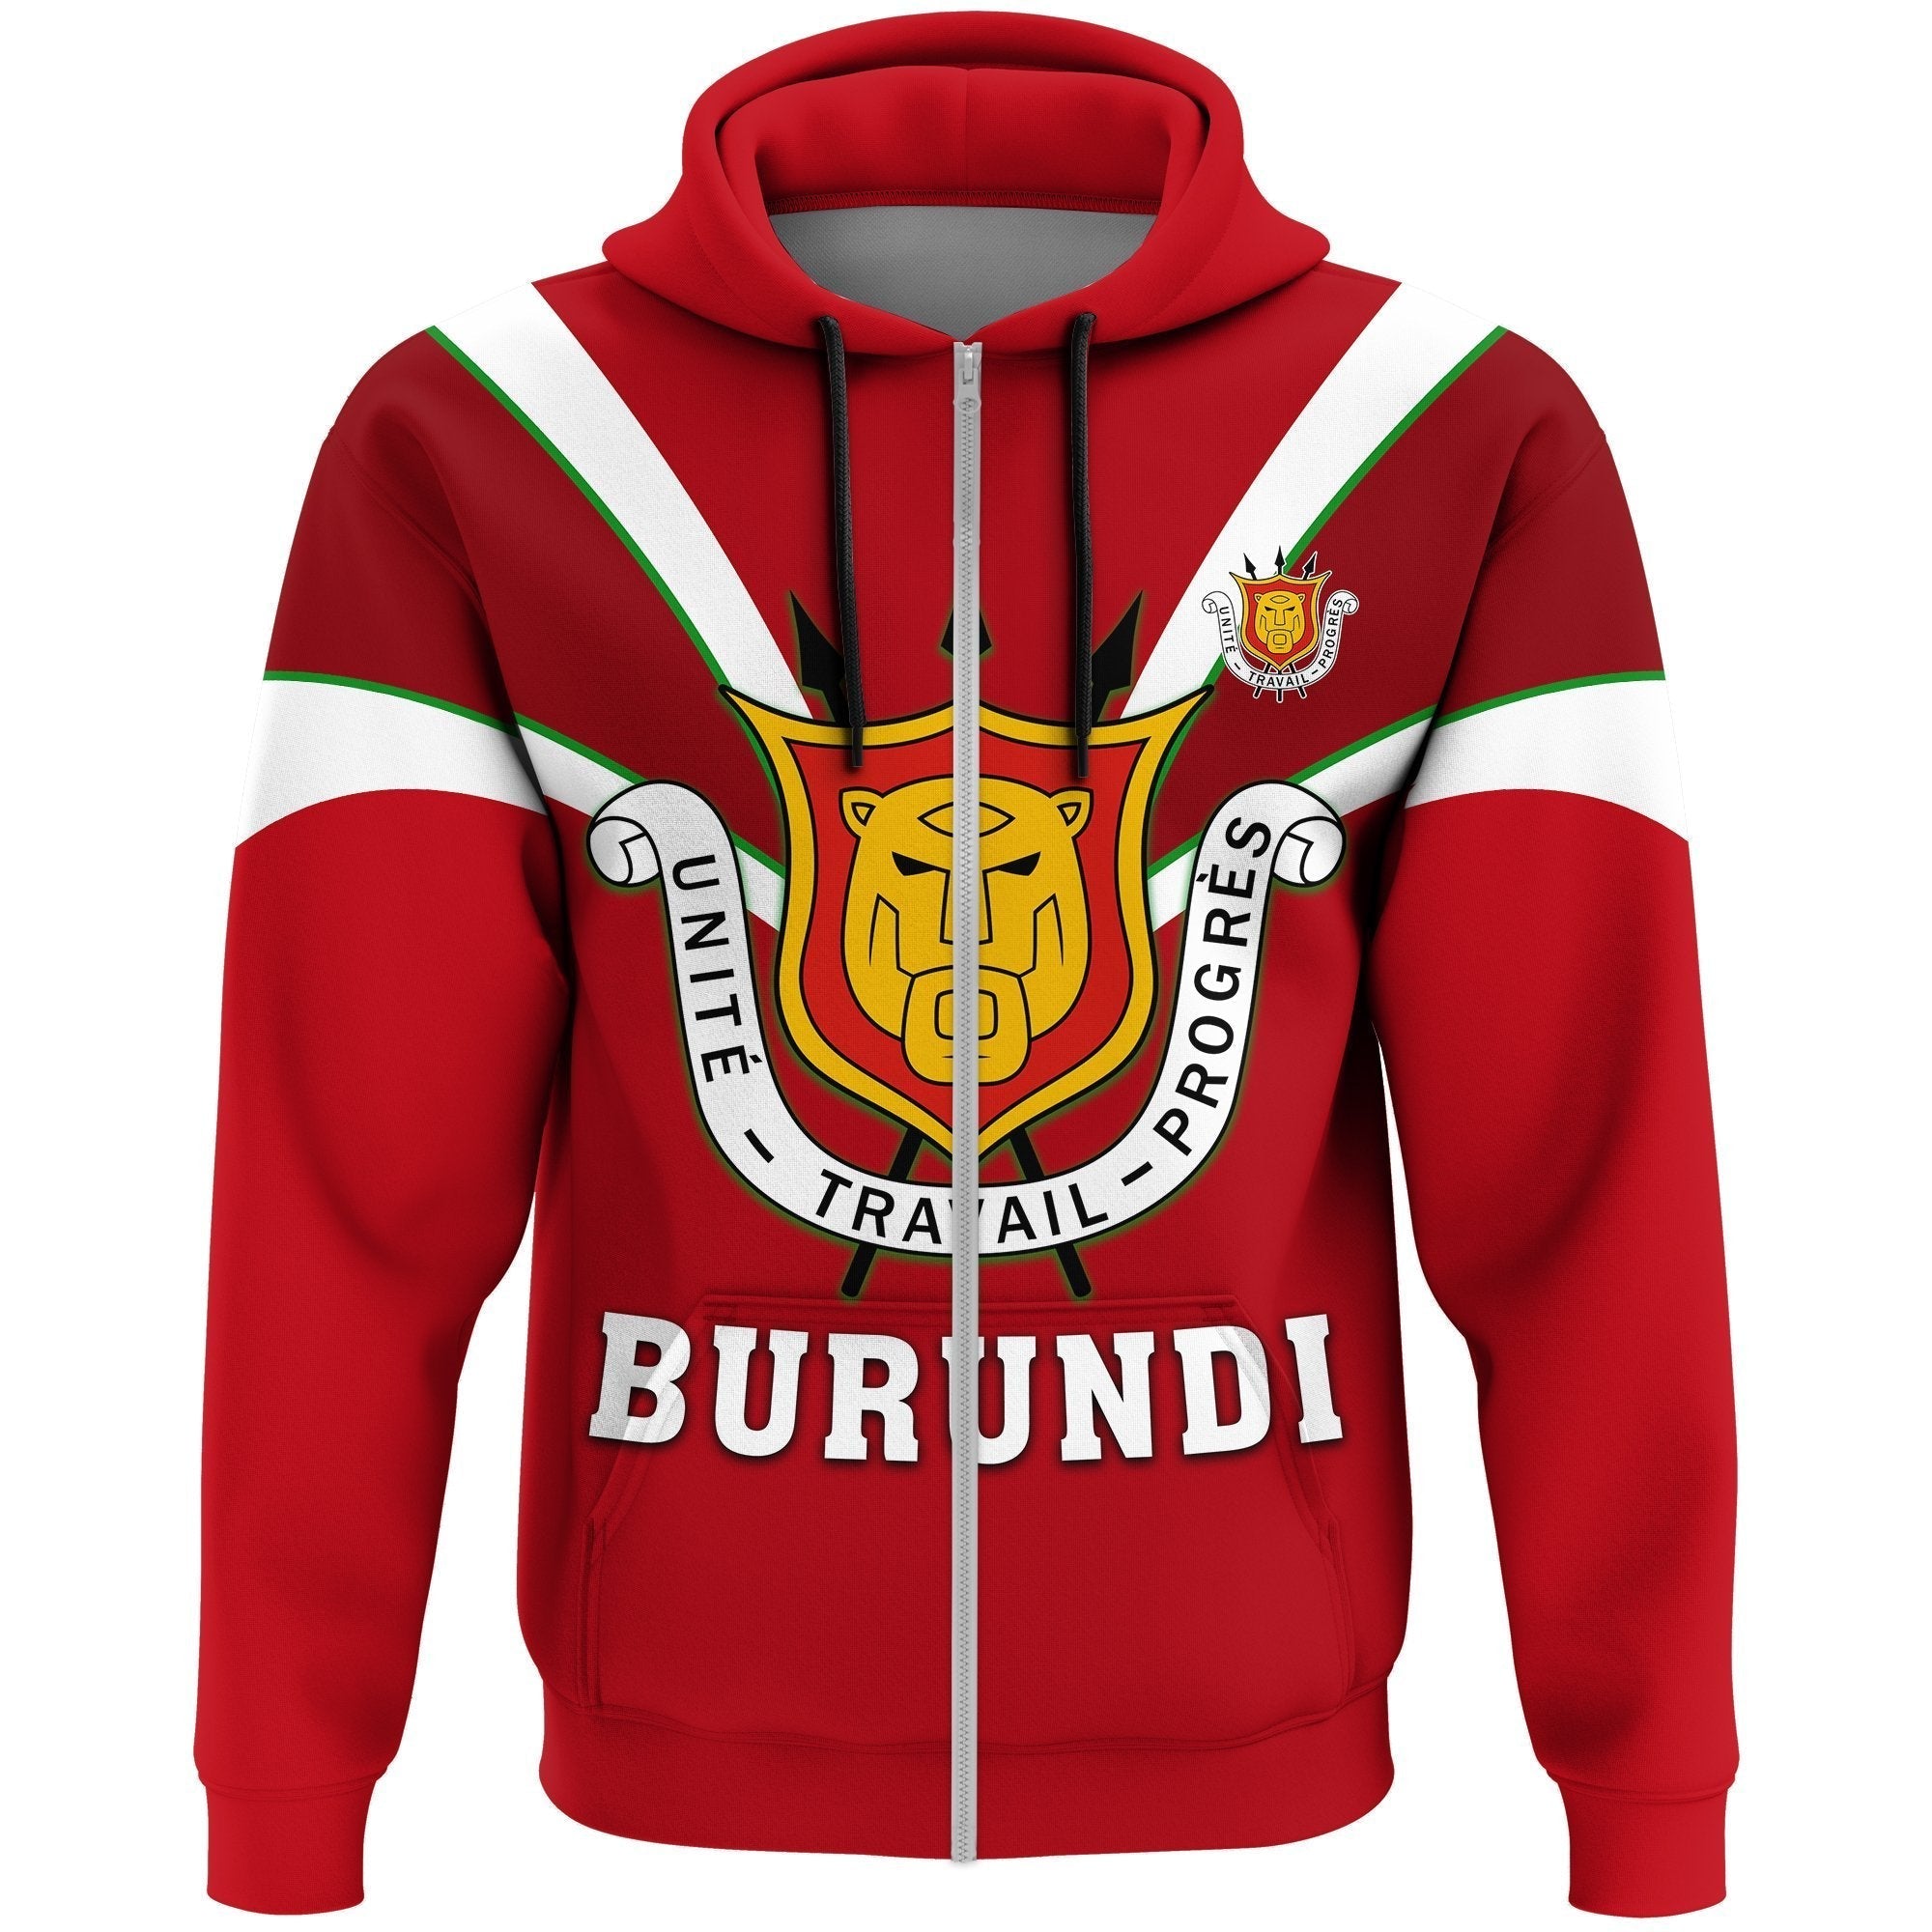 wonder-print-shop-hoodie-burundi-zip-hoodie-tusk-style